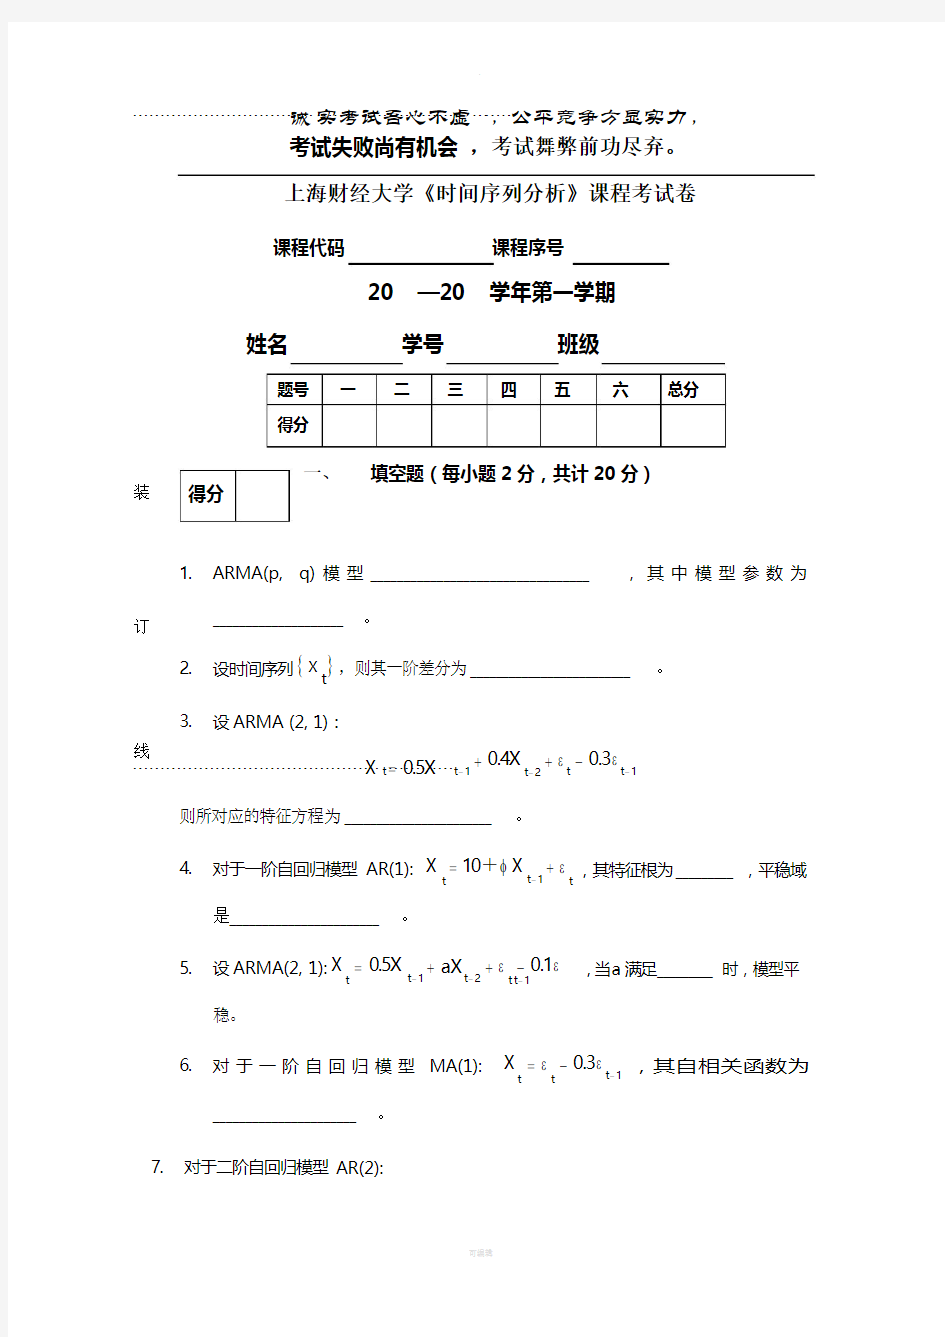 上海财经大学时间序列分析试题